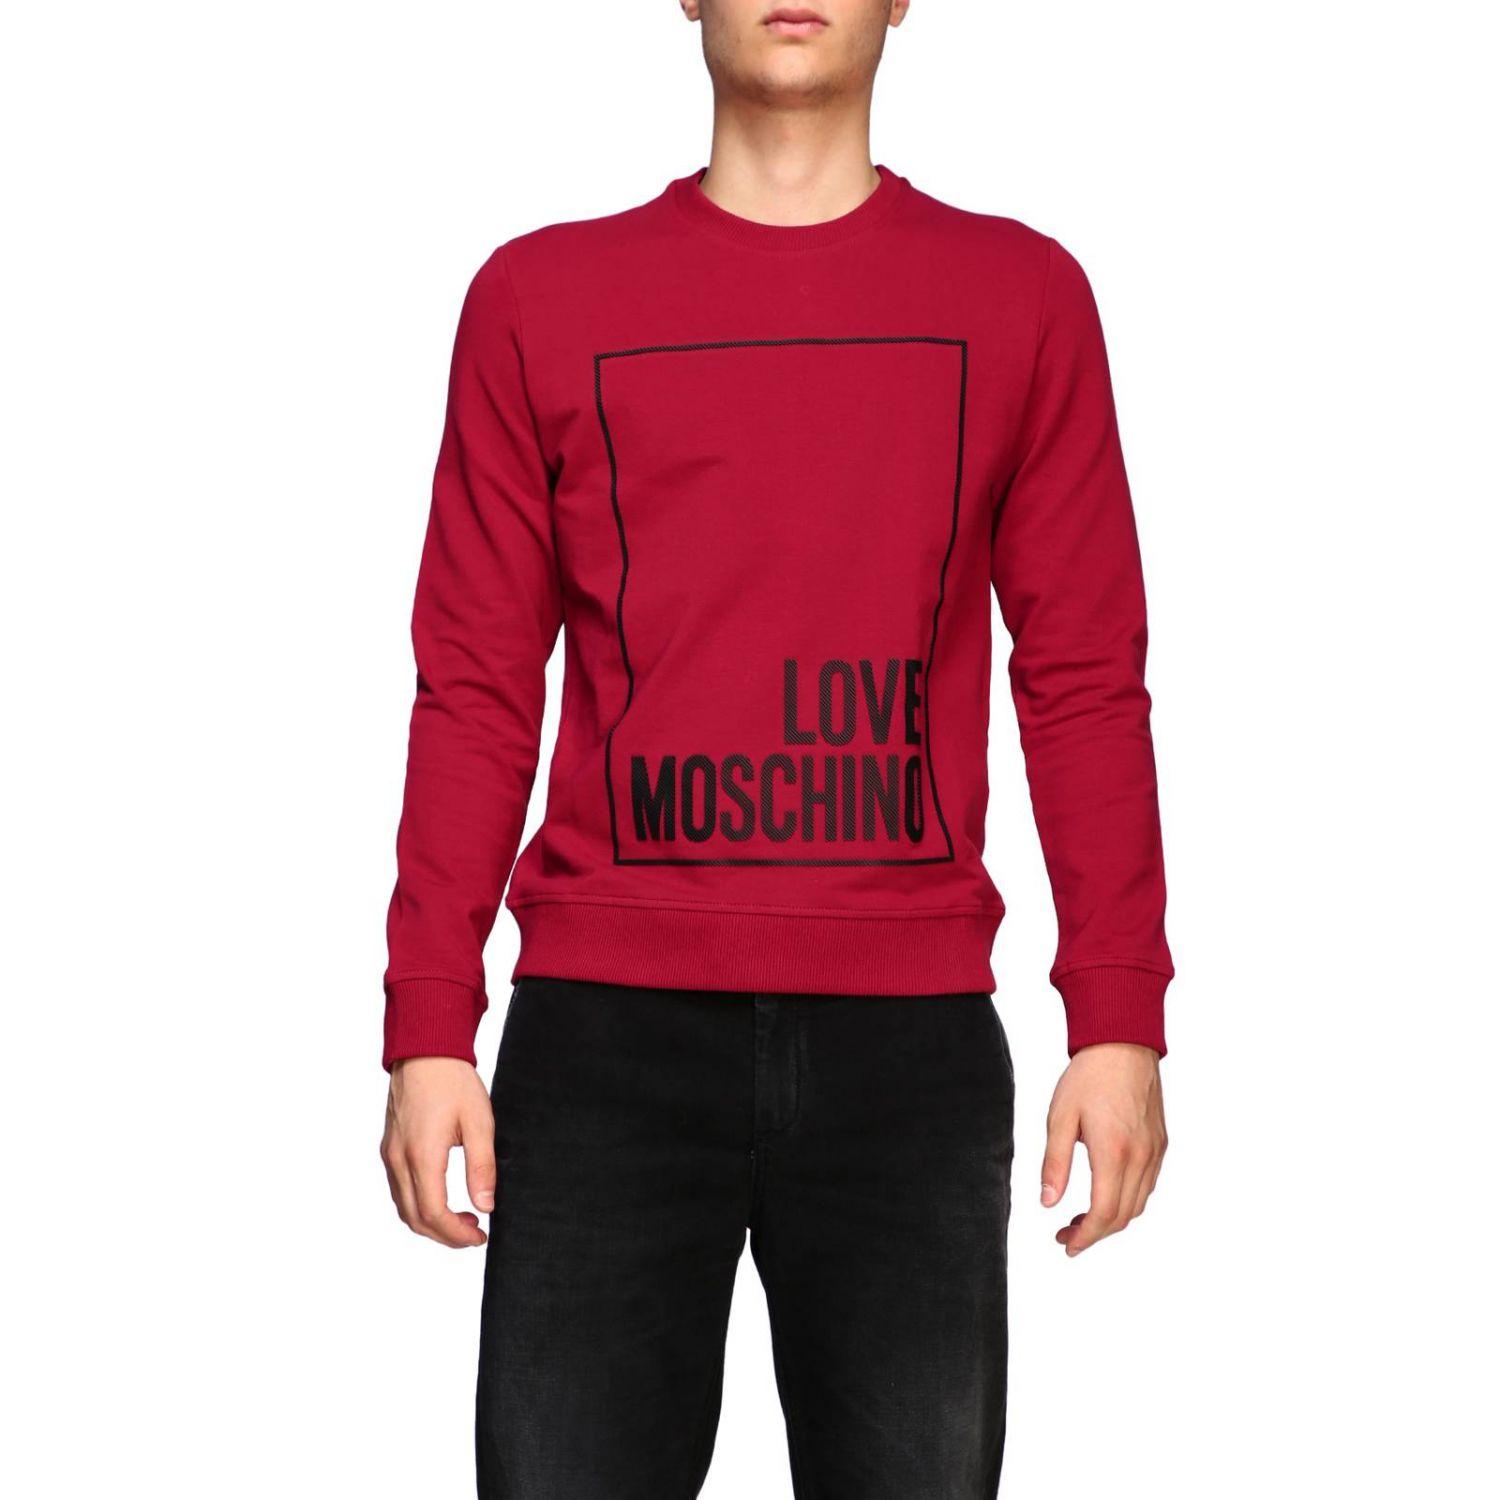 love moschino red sweatshirt